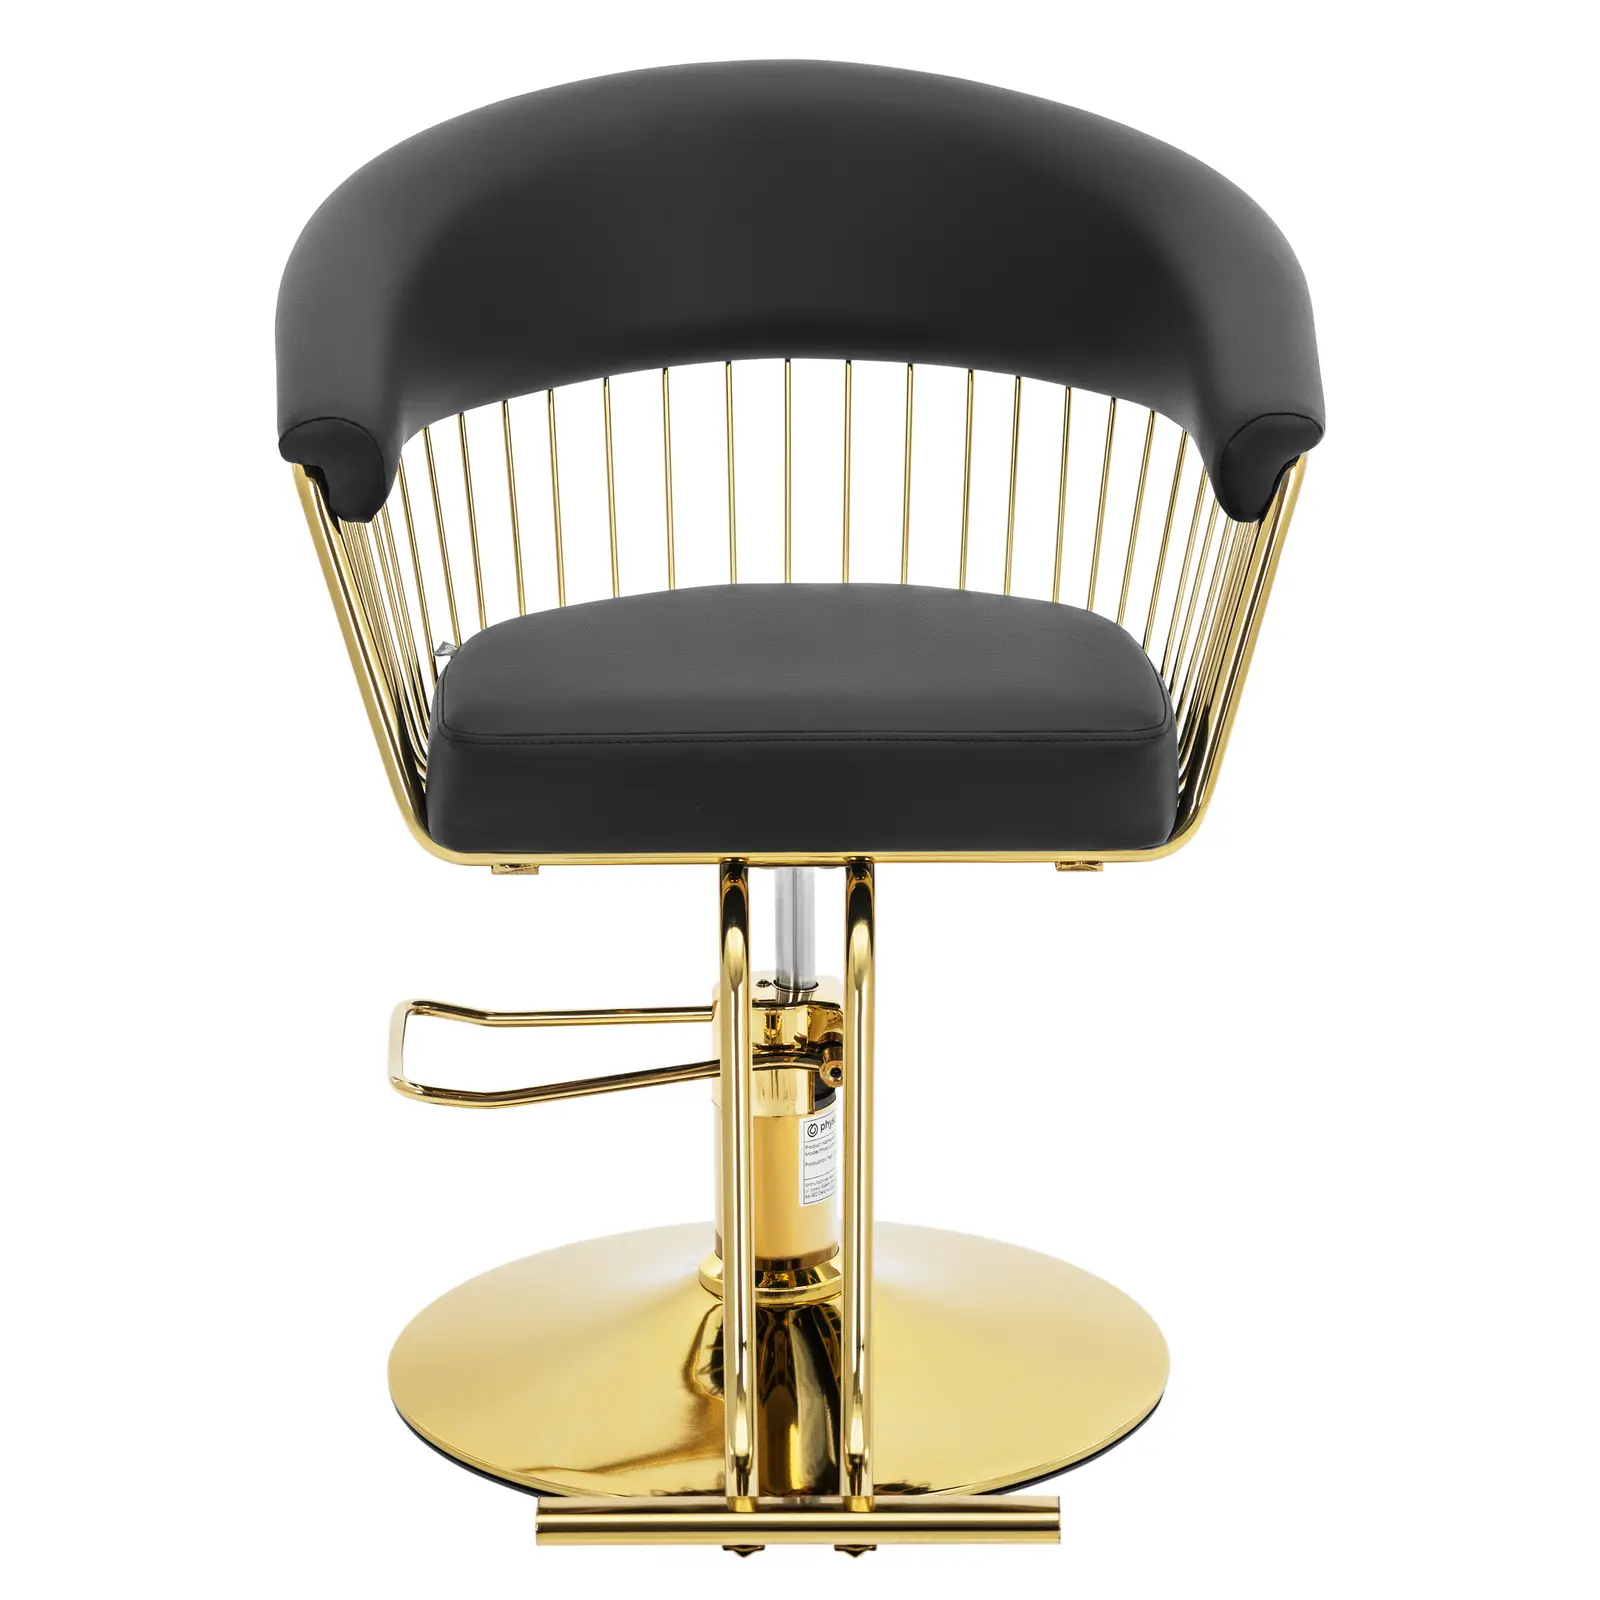 Cadeira de cabeleireiro com apoio para os pés - 820-950 mm - 200 kg - Preto, Dourado